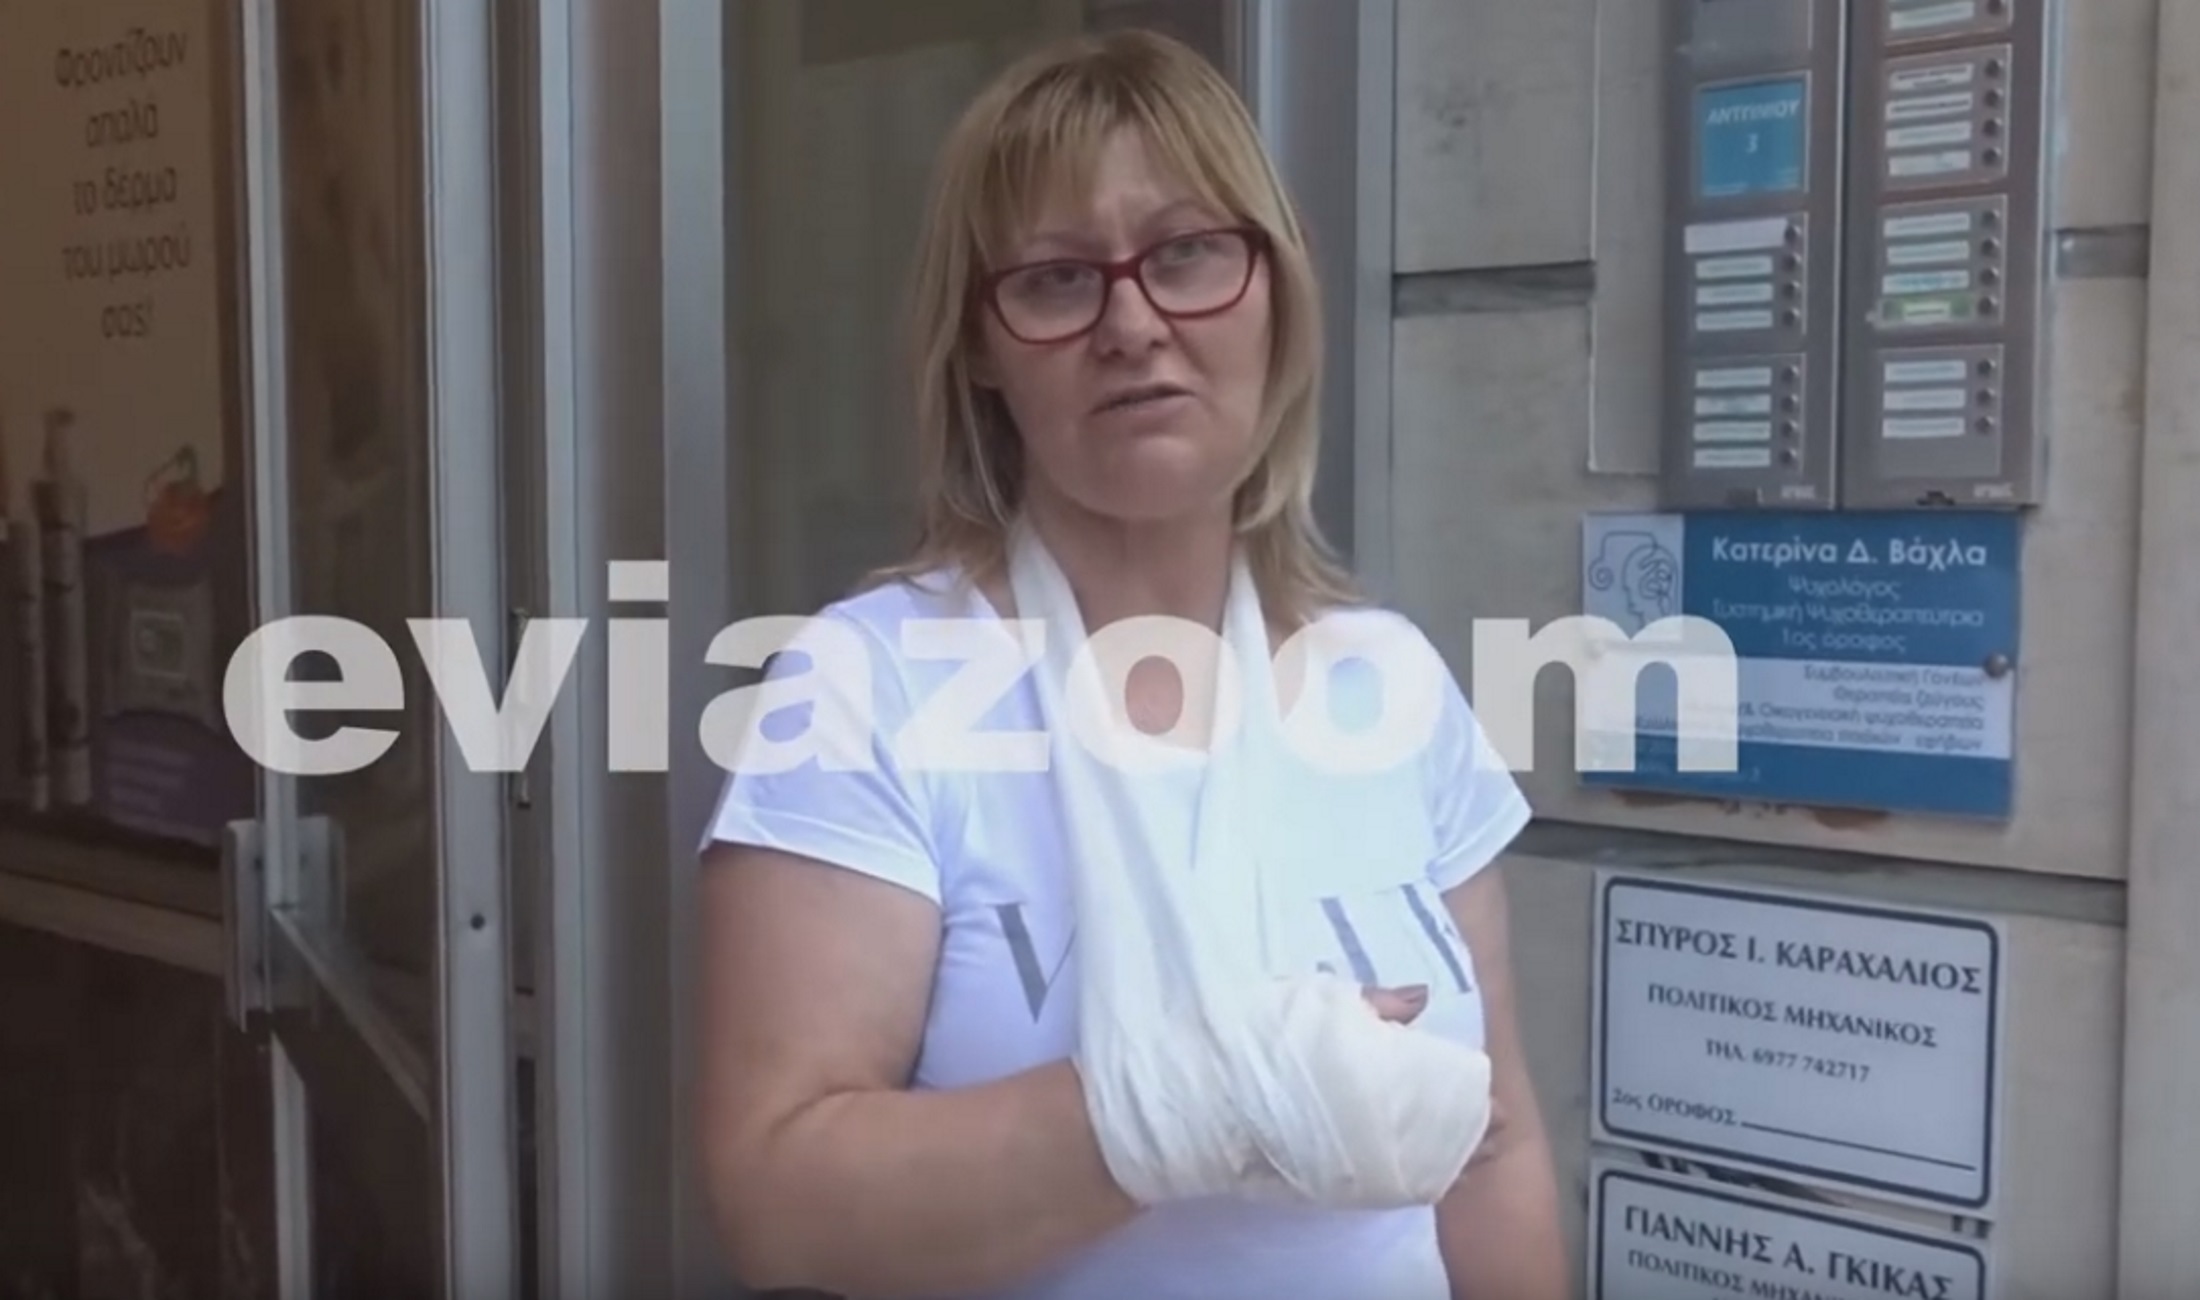 Εύβοια: Η επίθεση του πιτ μπουλ την έστειλε στο χειρουργείο! “Πάλευα μαζί του για 10 λεπτά” (Βίντεο)